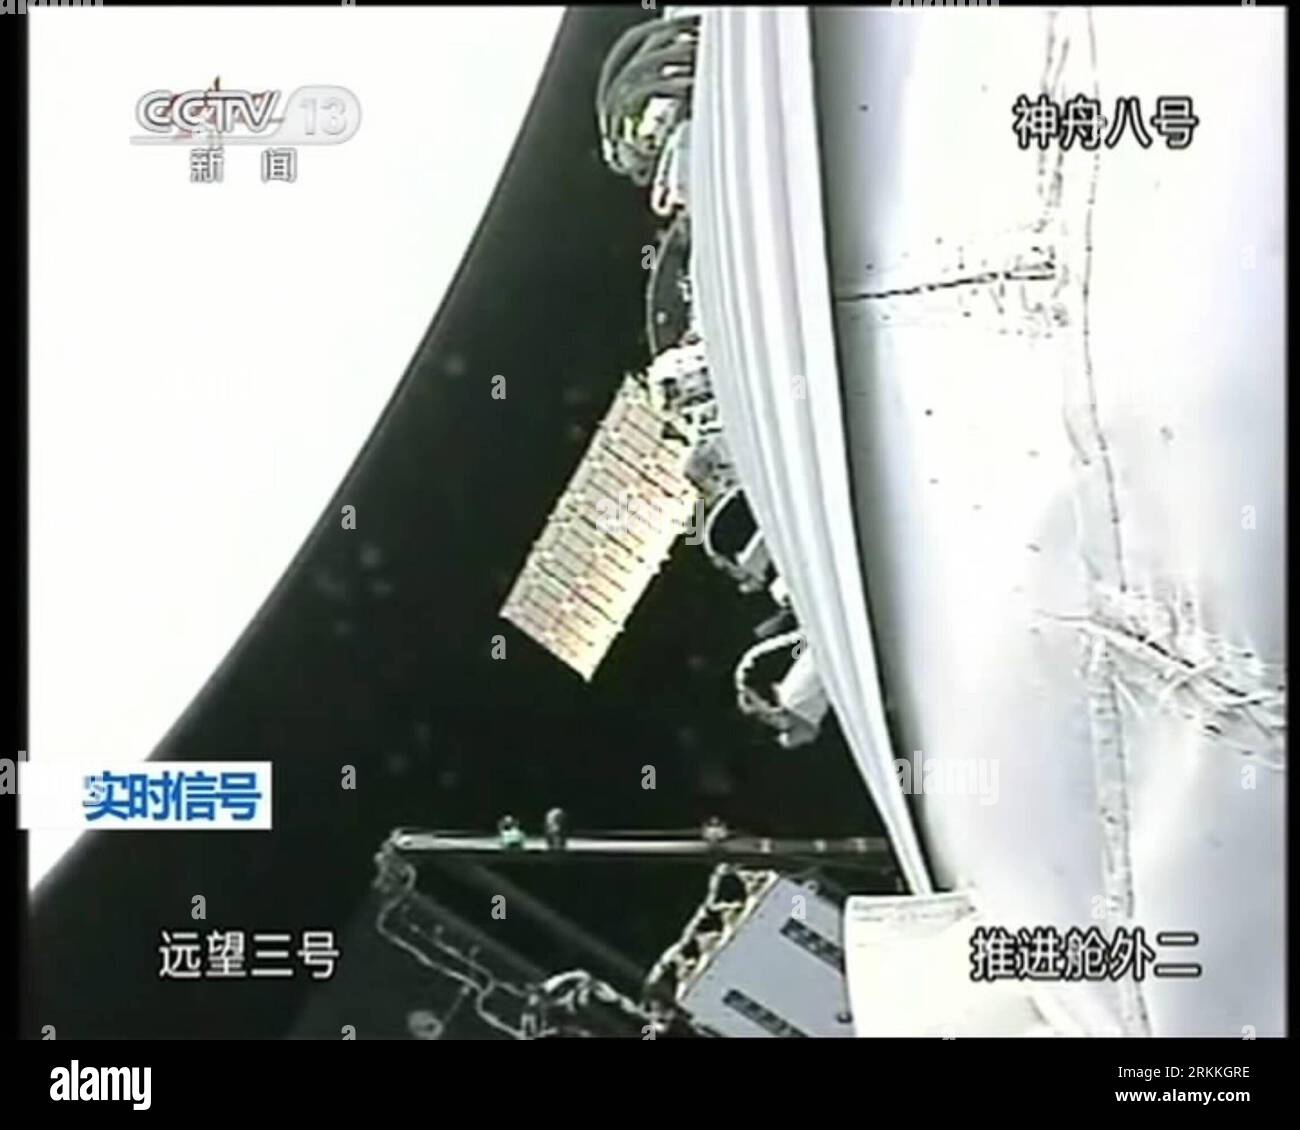 Bildnummer : 56241479 Datum : 02.11.2011 Copyright : imago/Xinhua (111103) -- PÉKIN, 3 novembre 2011 (Xinhua) -- Une capture vidéo prise à la télévision centrale de Chine le 3 novembre 2011 montre le vaisseau spatial Shenzhou-8 amarré avec le module de laboratoire spatial Tiangong-1. Vaisseau spatial sans pilote Shenzhou-8 amarré avec le module de laboratoire spatial Tiangong-1 tôt jeudi, selon le Centre de contrôle aérospatial de Beijing. (Xinhua) (ljh) (TIANGONG-1&SHENZHOU-8 DOCKING)CHINA-TIANGONG-1 -SHENZHOU-8 -DOCKING (CN) PUBLICATIONxNOTxINxCHN Gesellschaft Raumfahrt Andocken Andockmanöver x0x xst 2011 quadrat premiumd 56241479 DAT Banque D'Images